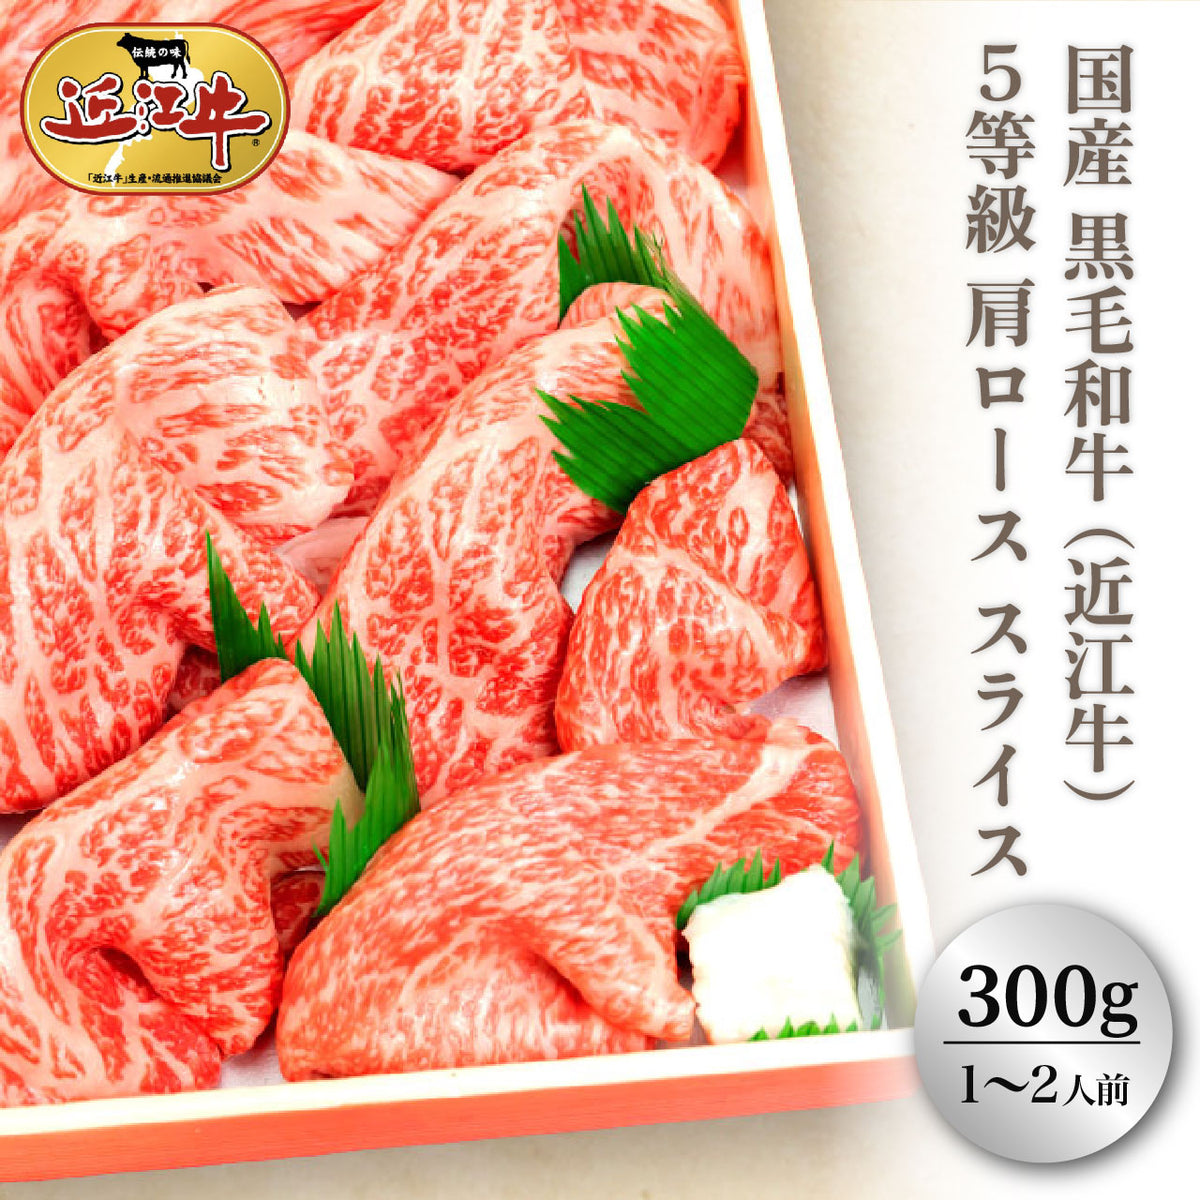 【送料無料】(近江牛) 黒毛和牛 5等級肩ロース スライス すき焼き